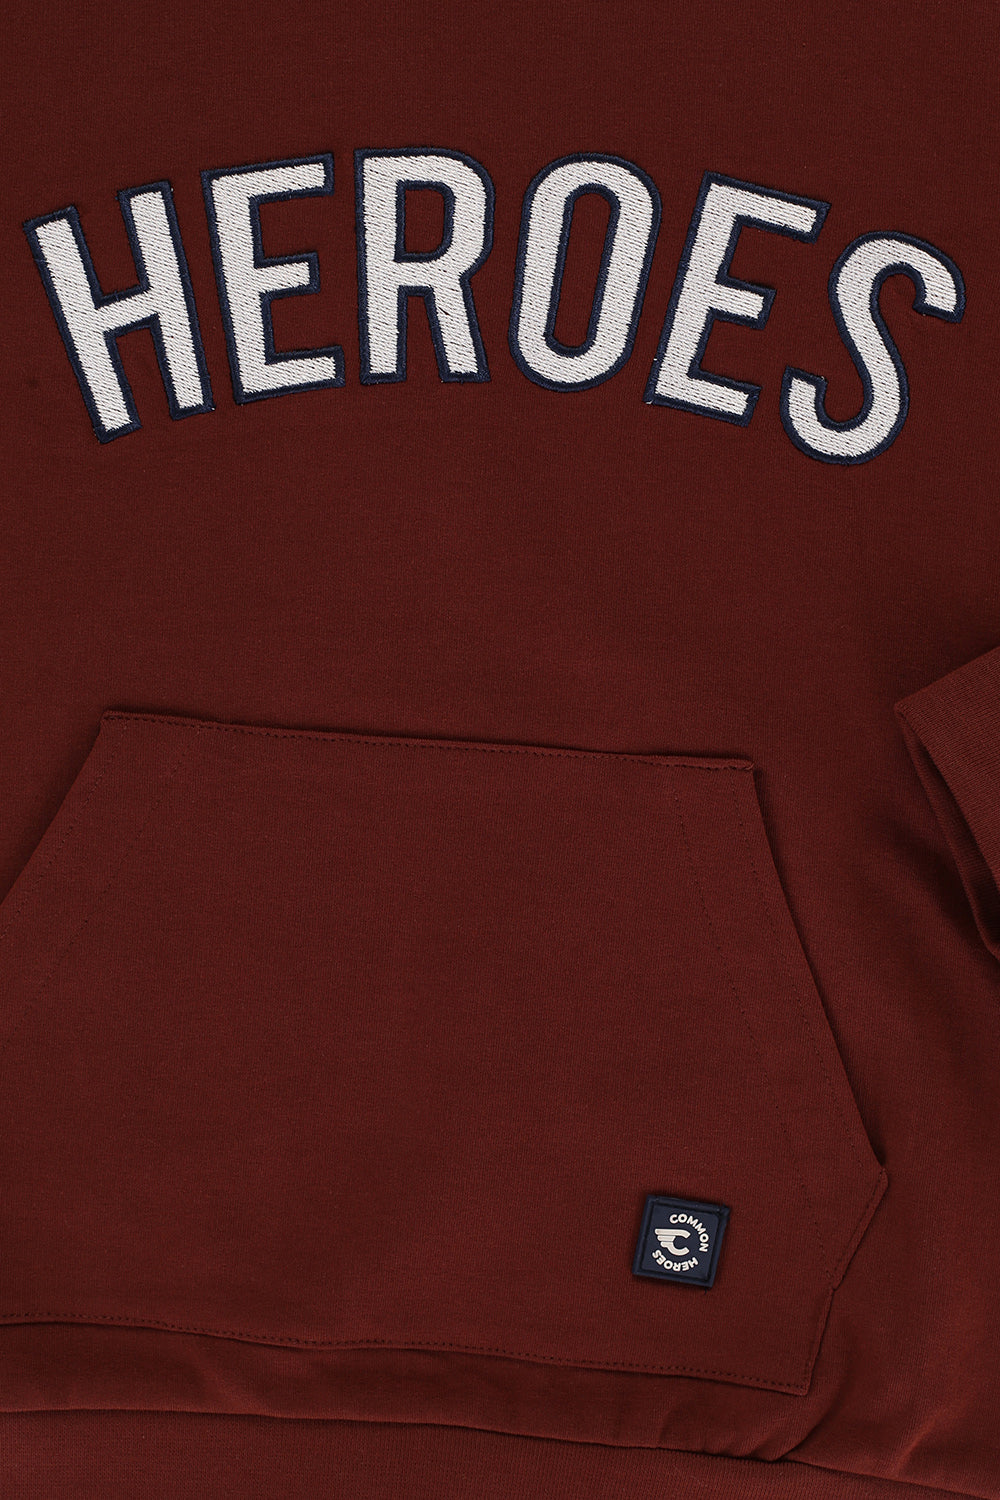 Jongens Crewneck Sweater van Common Heroes in de kleur Dark rust in maat 158-164.